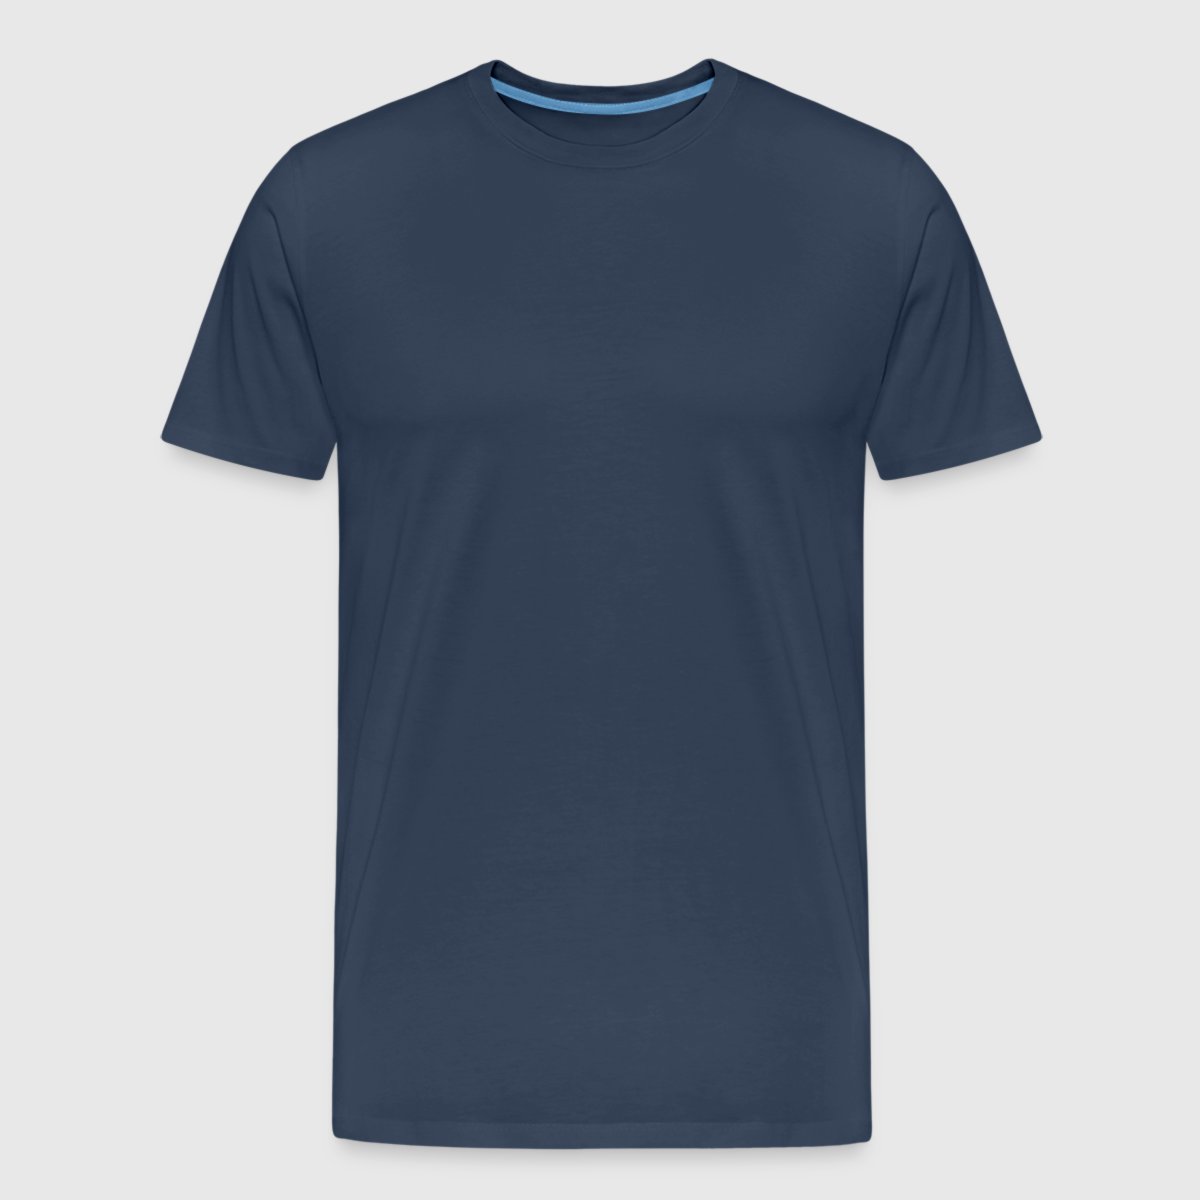 Männer Premium Bio T-Shirt - Vorne